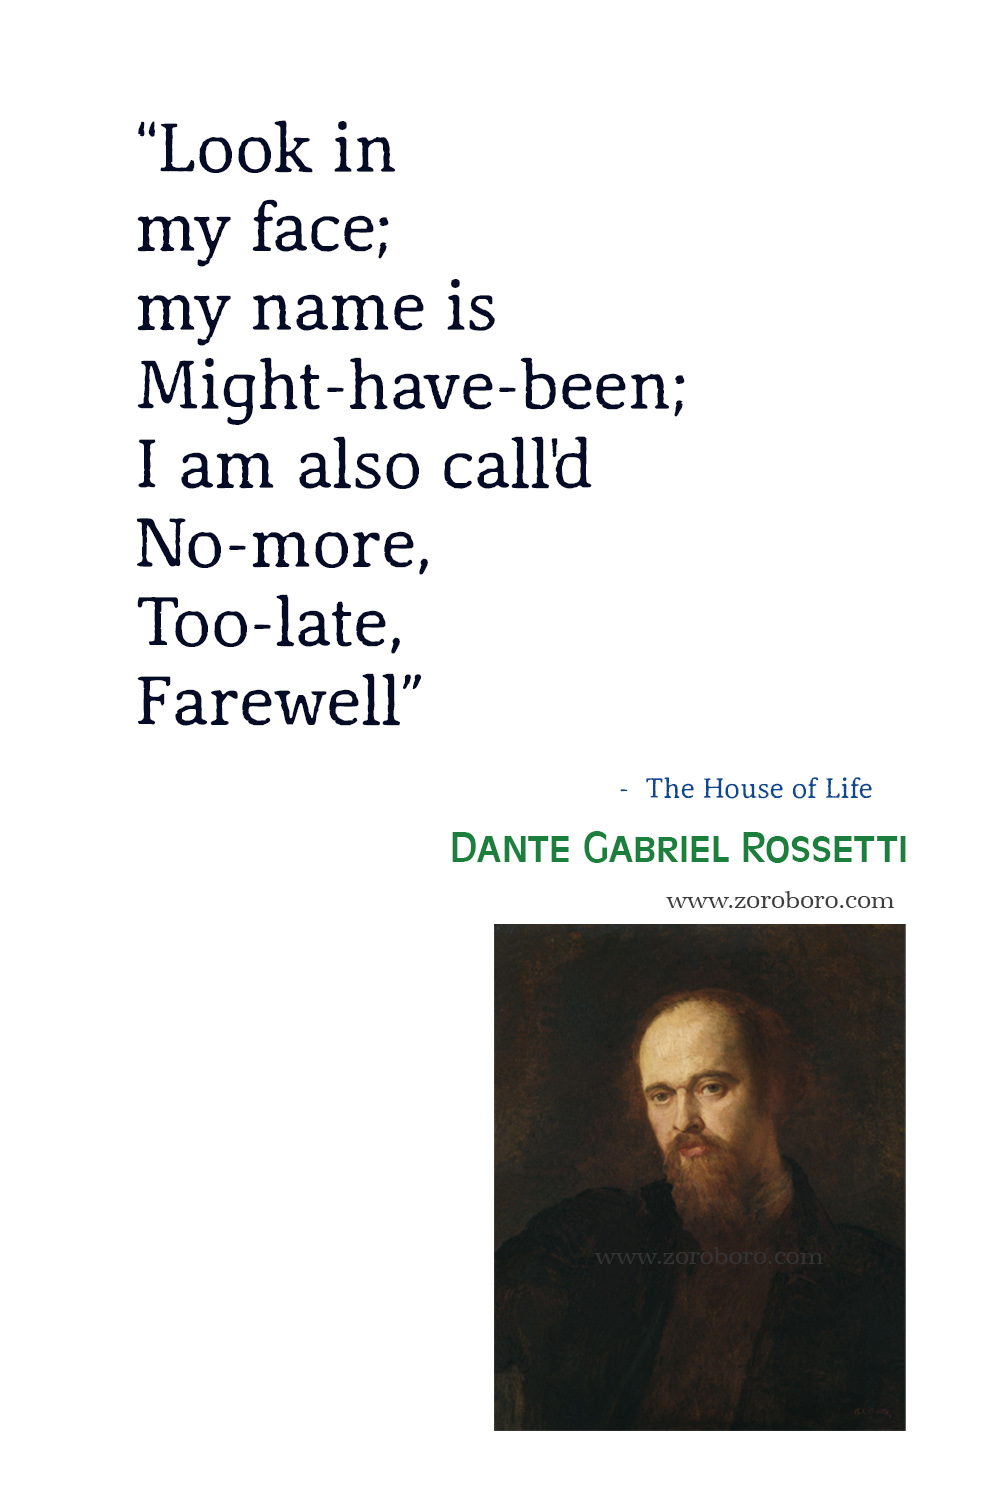 Dante Gabriel Rossetti Quotes, Dante Gabriel Rossetti Poems, Dante Gabriel Rossetti Poetry, Dante Gabriel Rossetti Famous Poems.